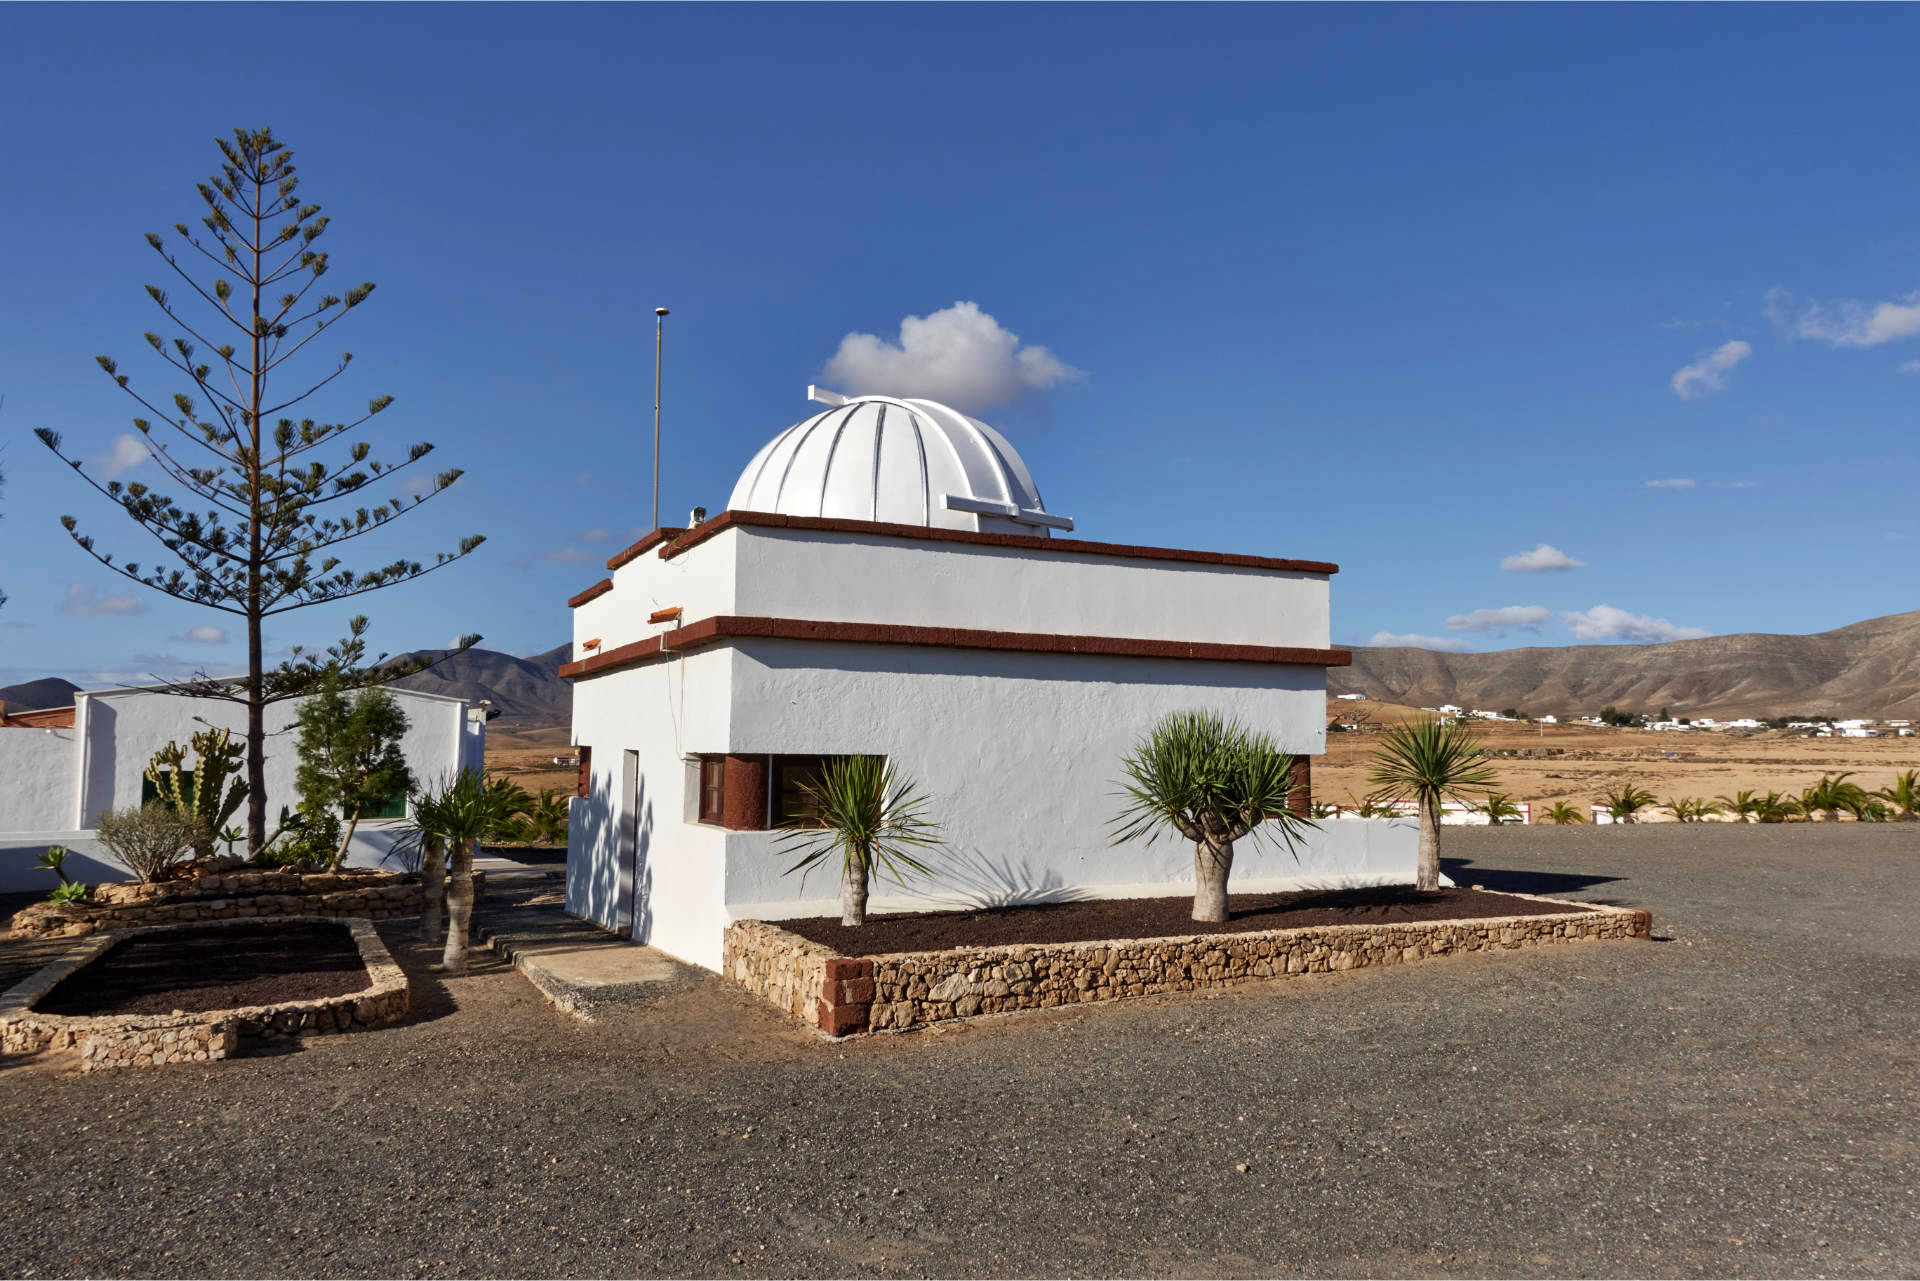 Das Observatorium von Tefía Fuerteventura.